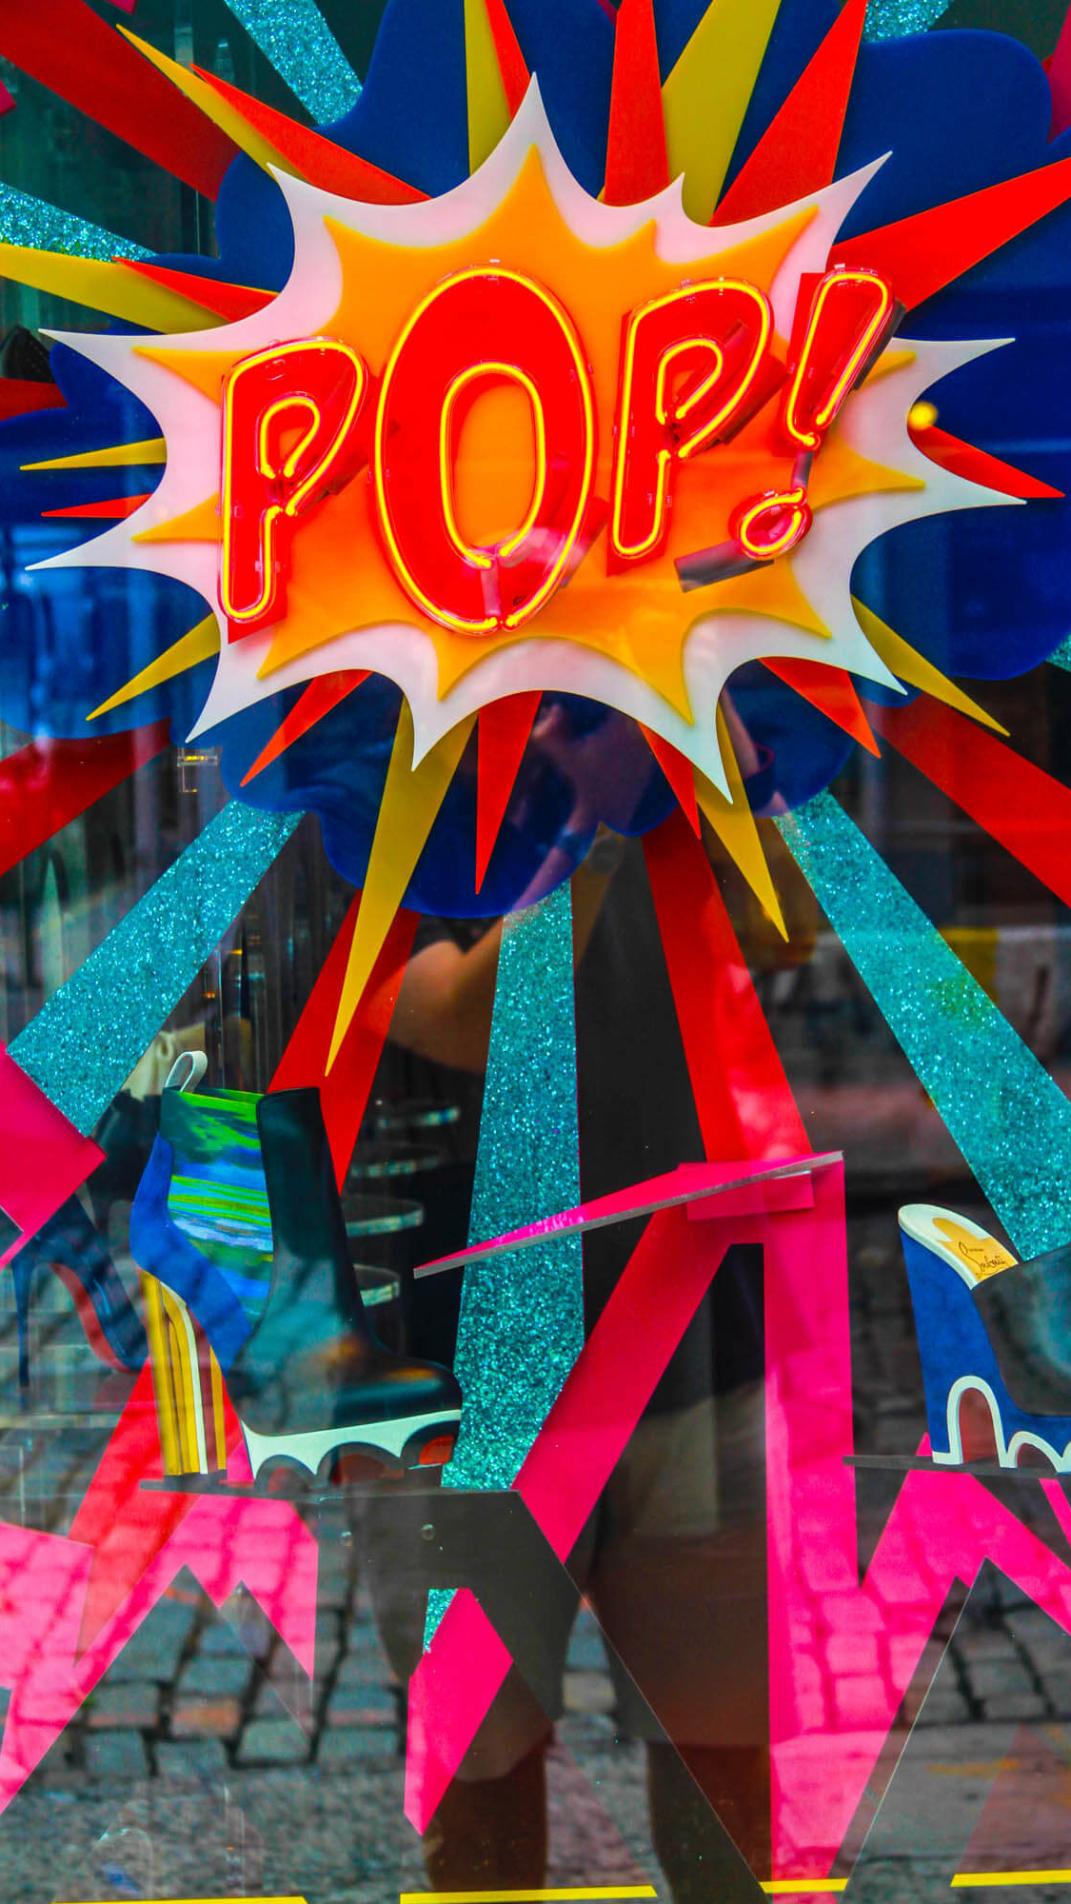 Neonlicht mit dem Schriftzug 'Pop' in Rot-Gelb auf einer bunten Glasscheibe.